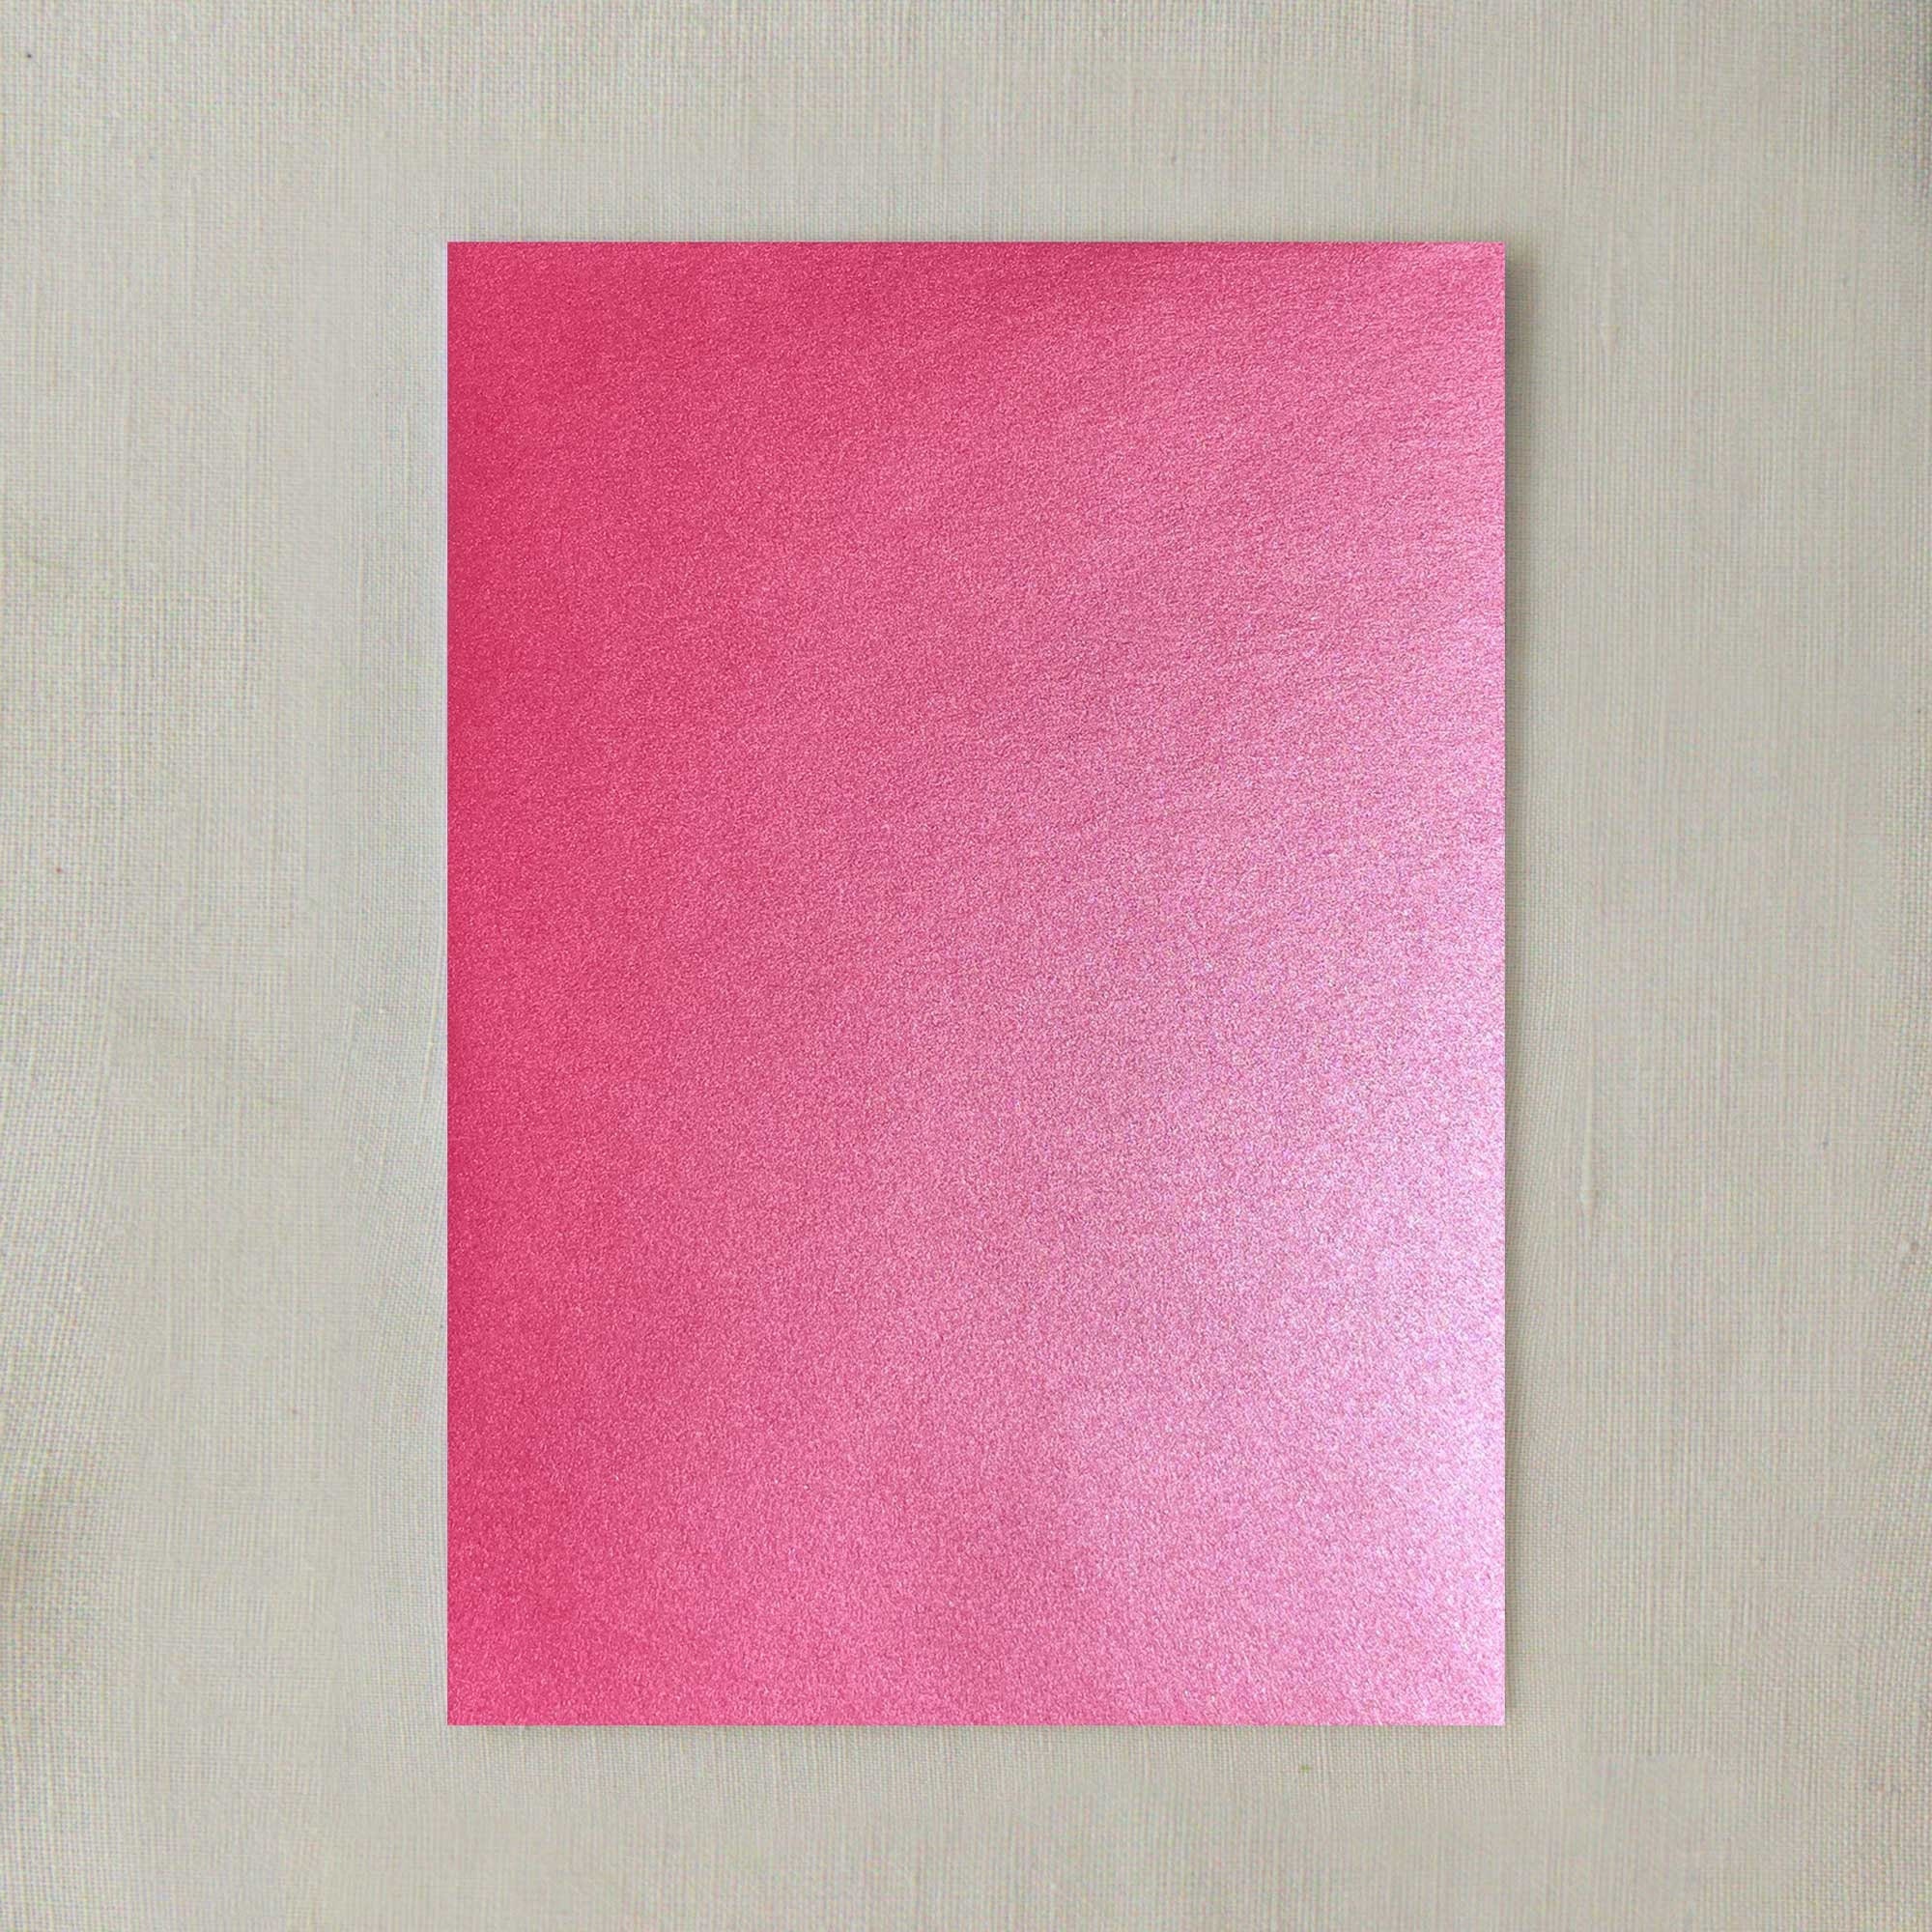 Pink Metallic Card Stock Paper -  Sweden